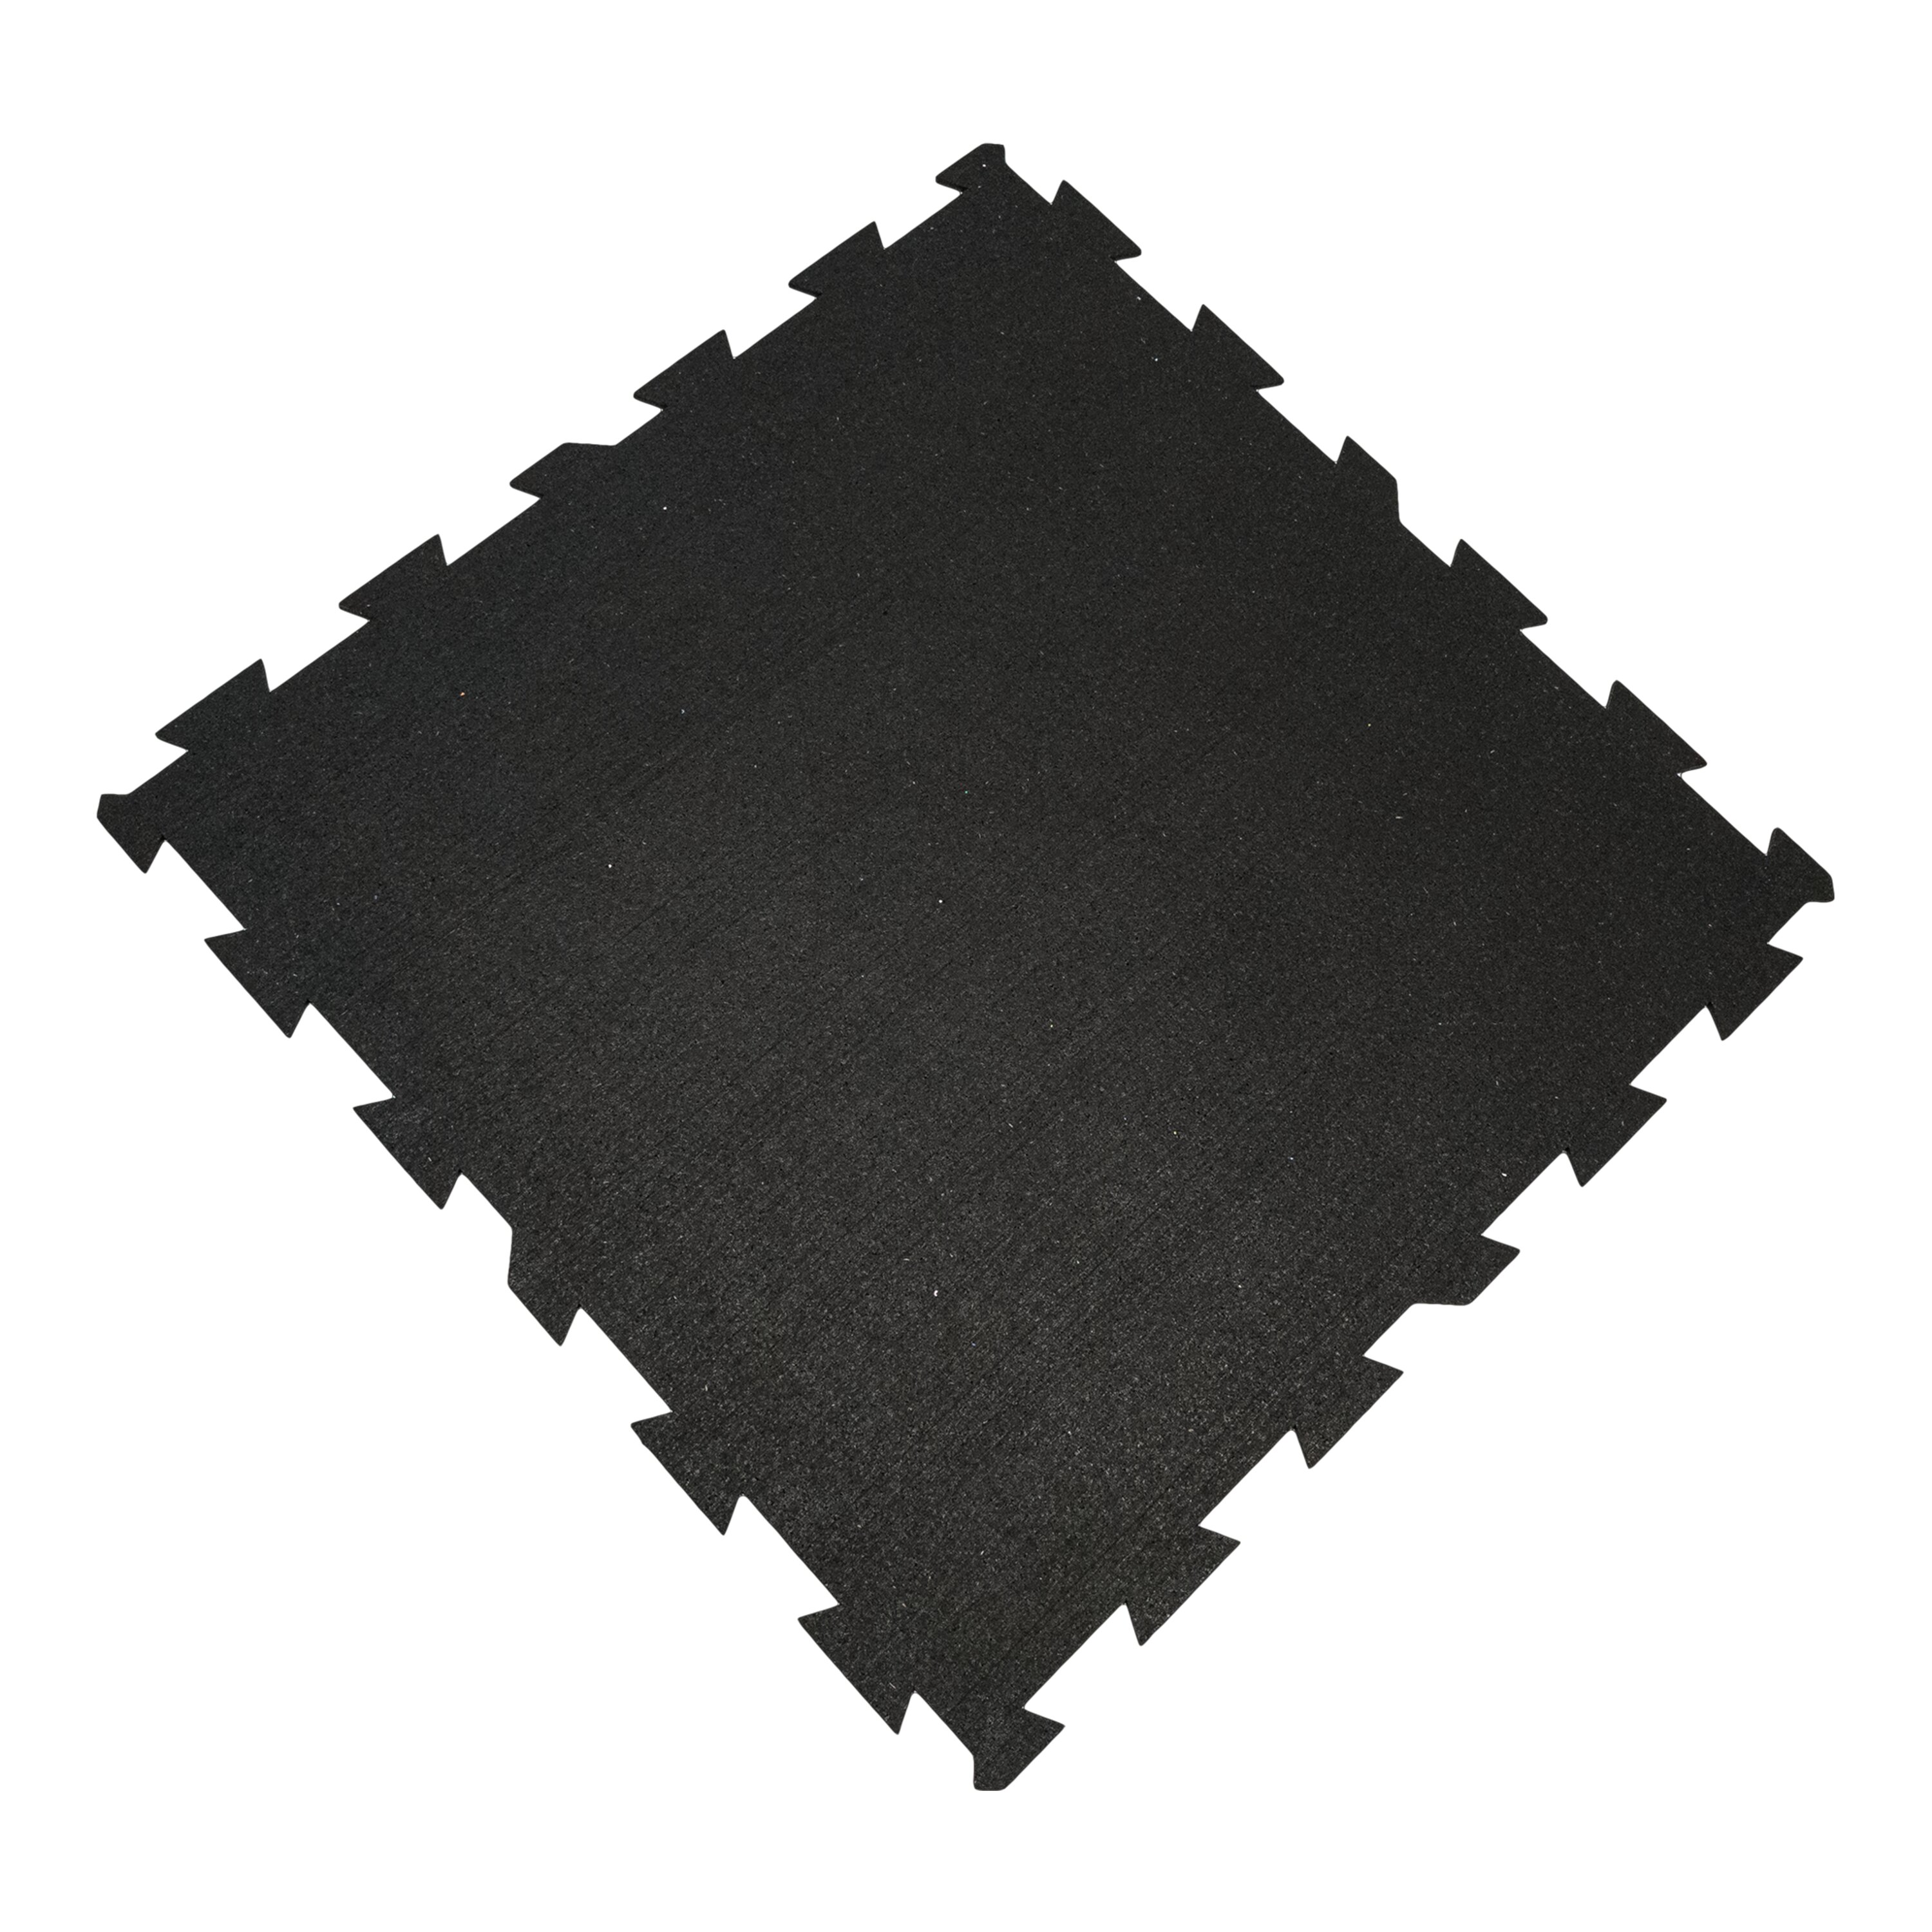 Černá podlahová guma FLOMA FitFlo SF1050 - délka 100 cm, šířka 100 cm, výška 0,8 cm